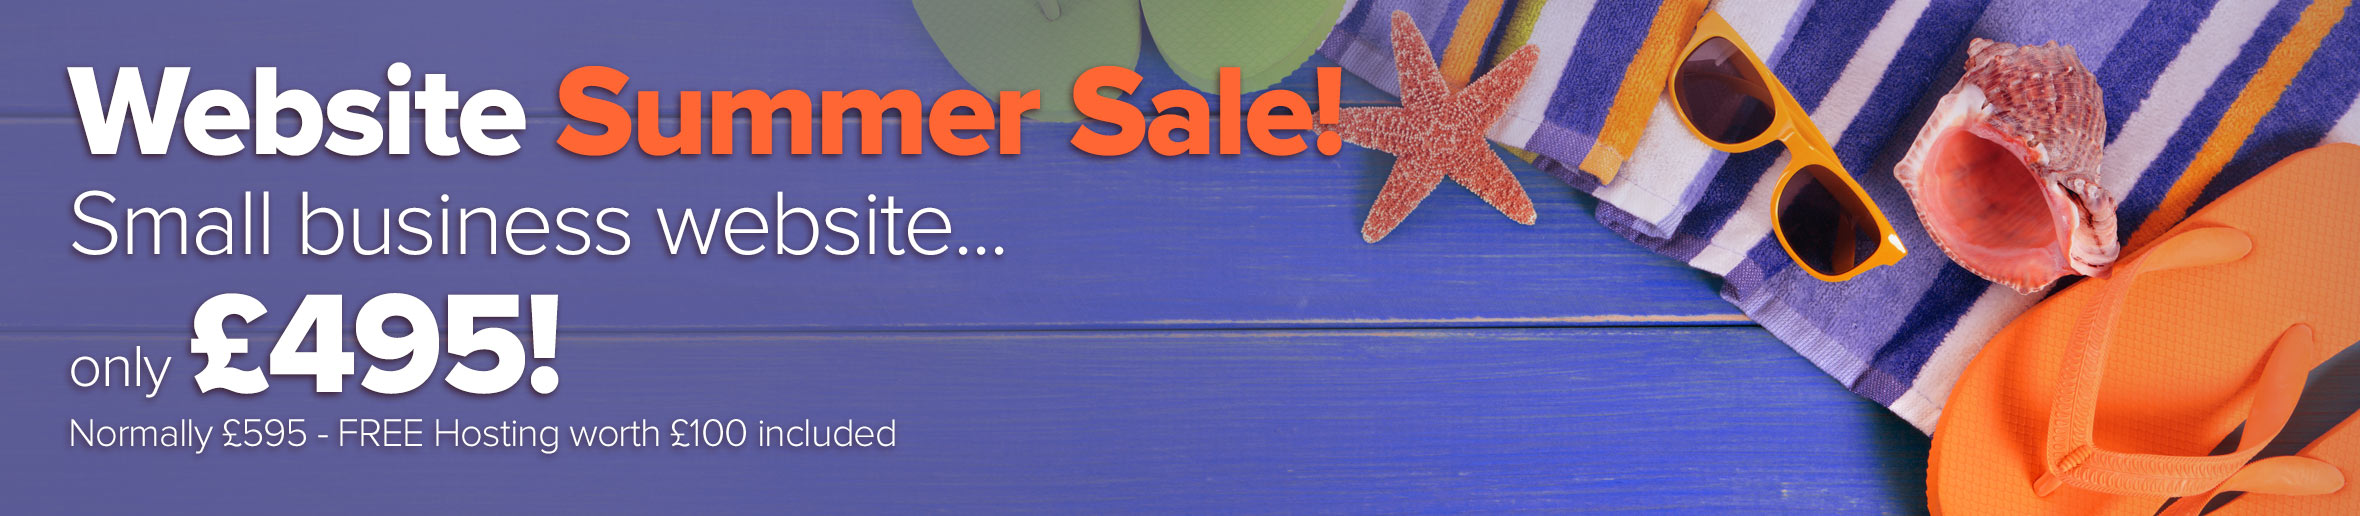 Website Summer Sale - Starter Package